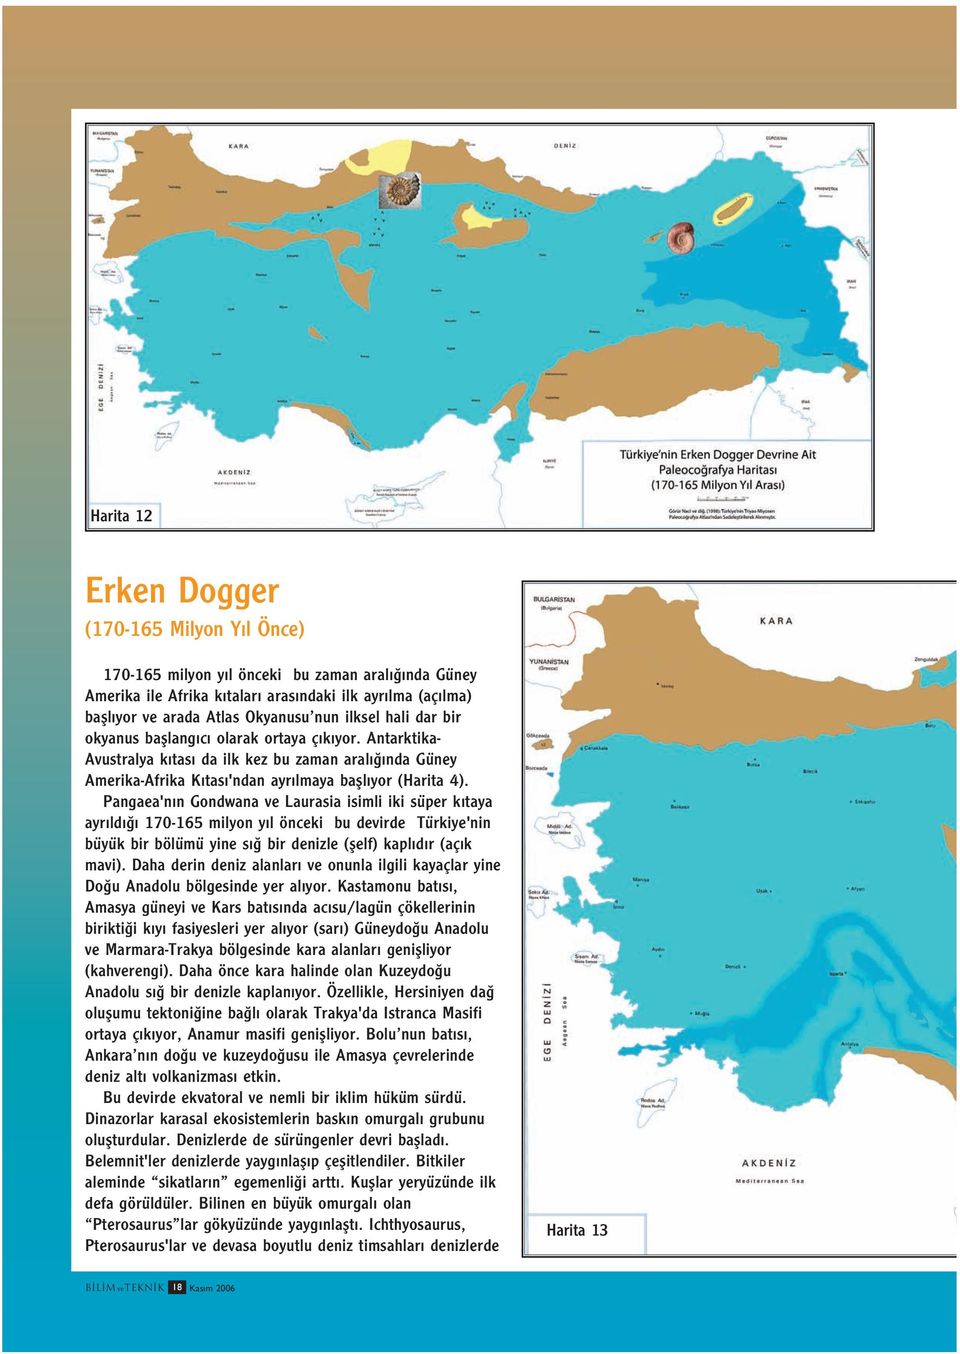 Pangaea'n n Gondwana ve Laurasia isimli iki süper k taya ayr ld 170-165 milyon y l önceki bu devirde Türkiye'nin büyük bir bölümü yine s bir denizle (flelf) kapl d r (aç k mavi).